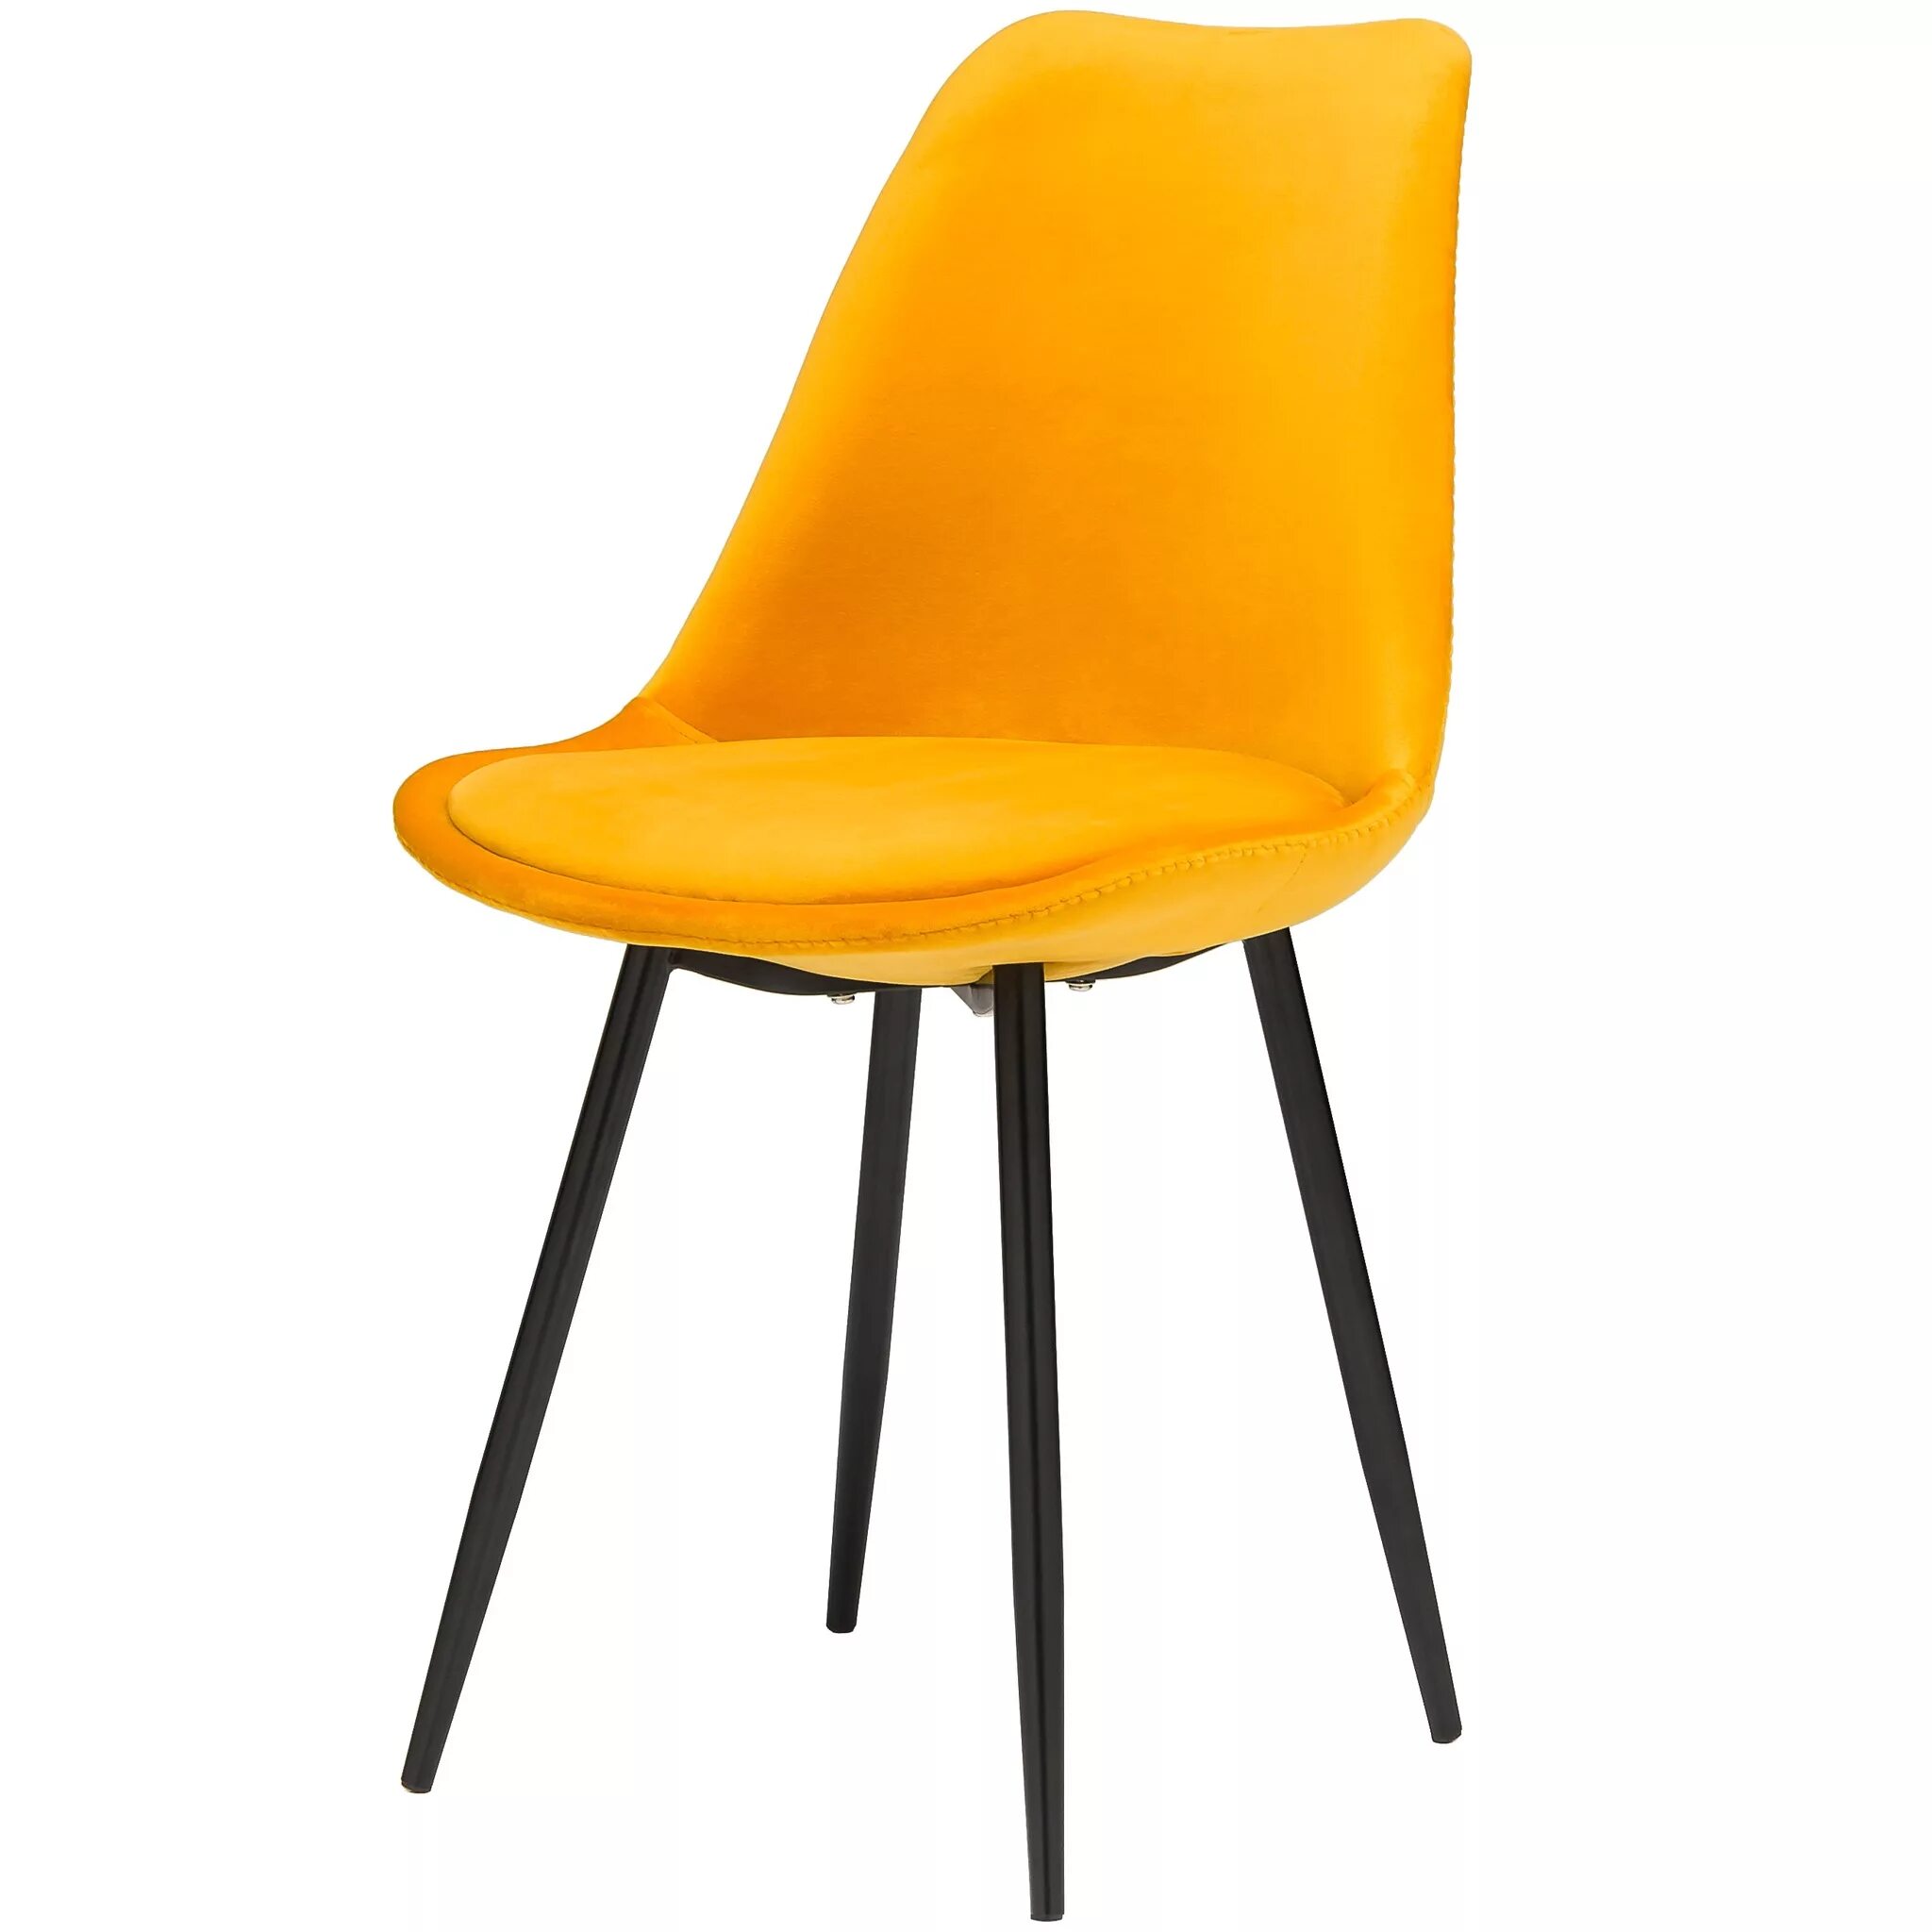 Купить стулья в могилеве. Стул икеа желтый. Мягкие стулья икеа. Икеа стулья кухонные. Стул икеа оранжевый.